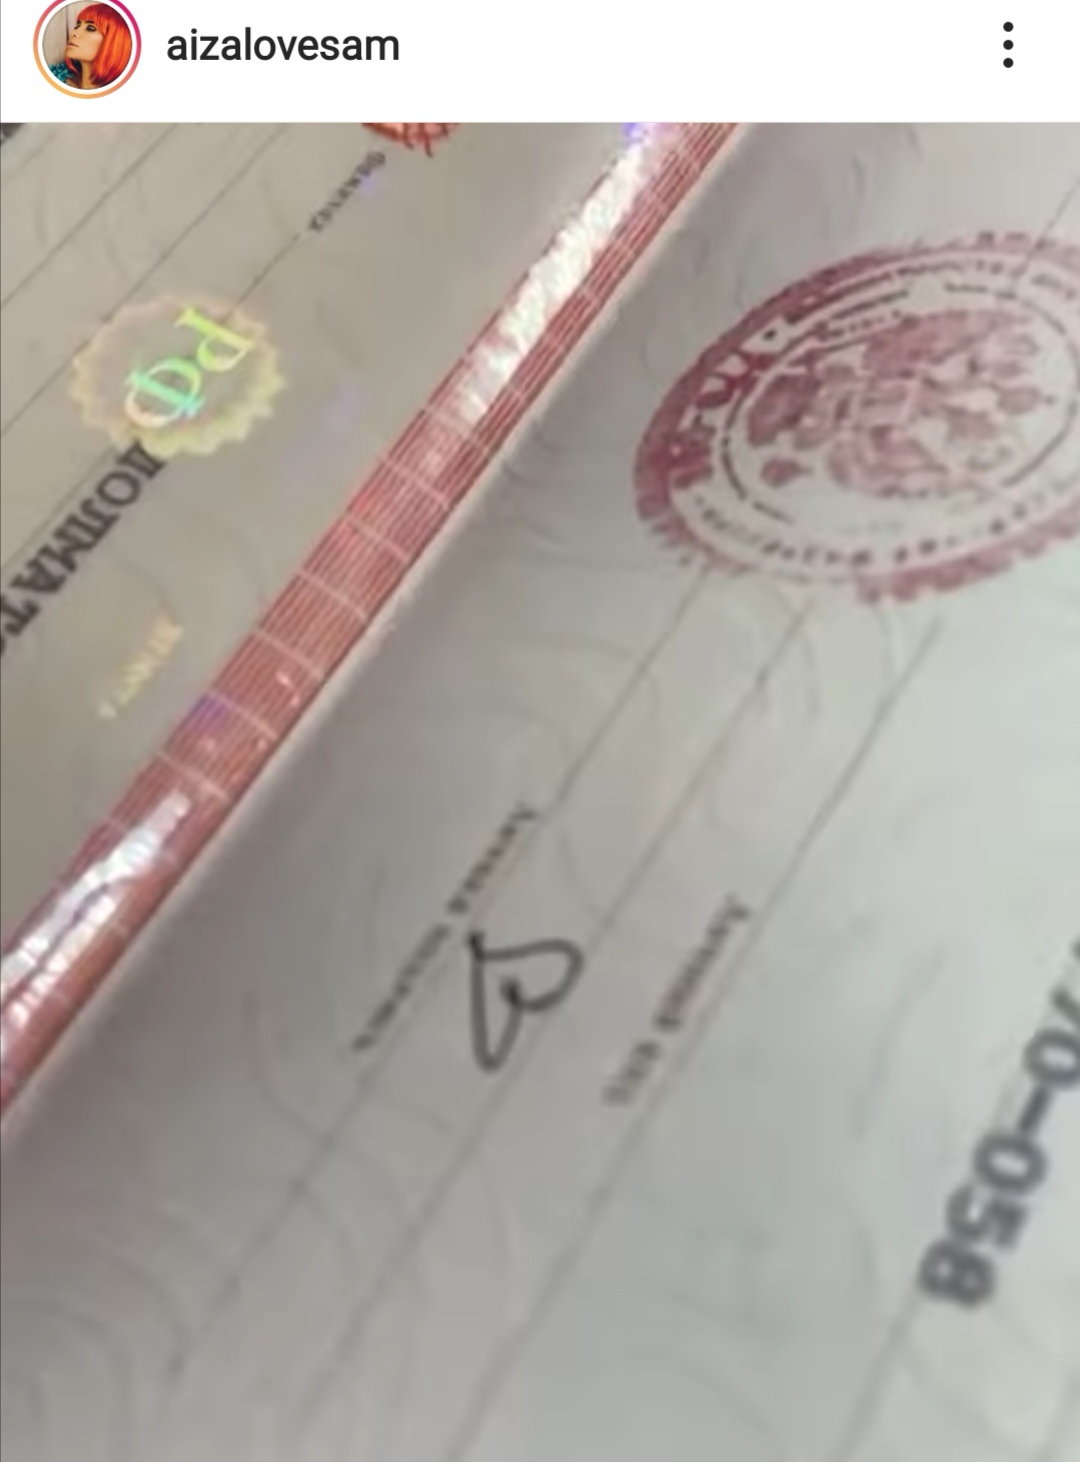 Айза Долматова подставила работников отдела, в котором получала паспорт